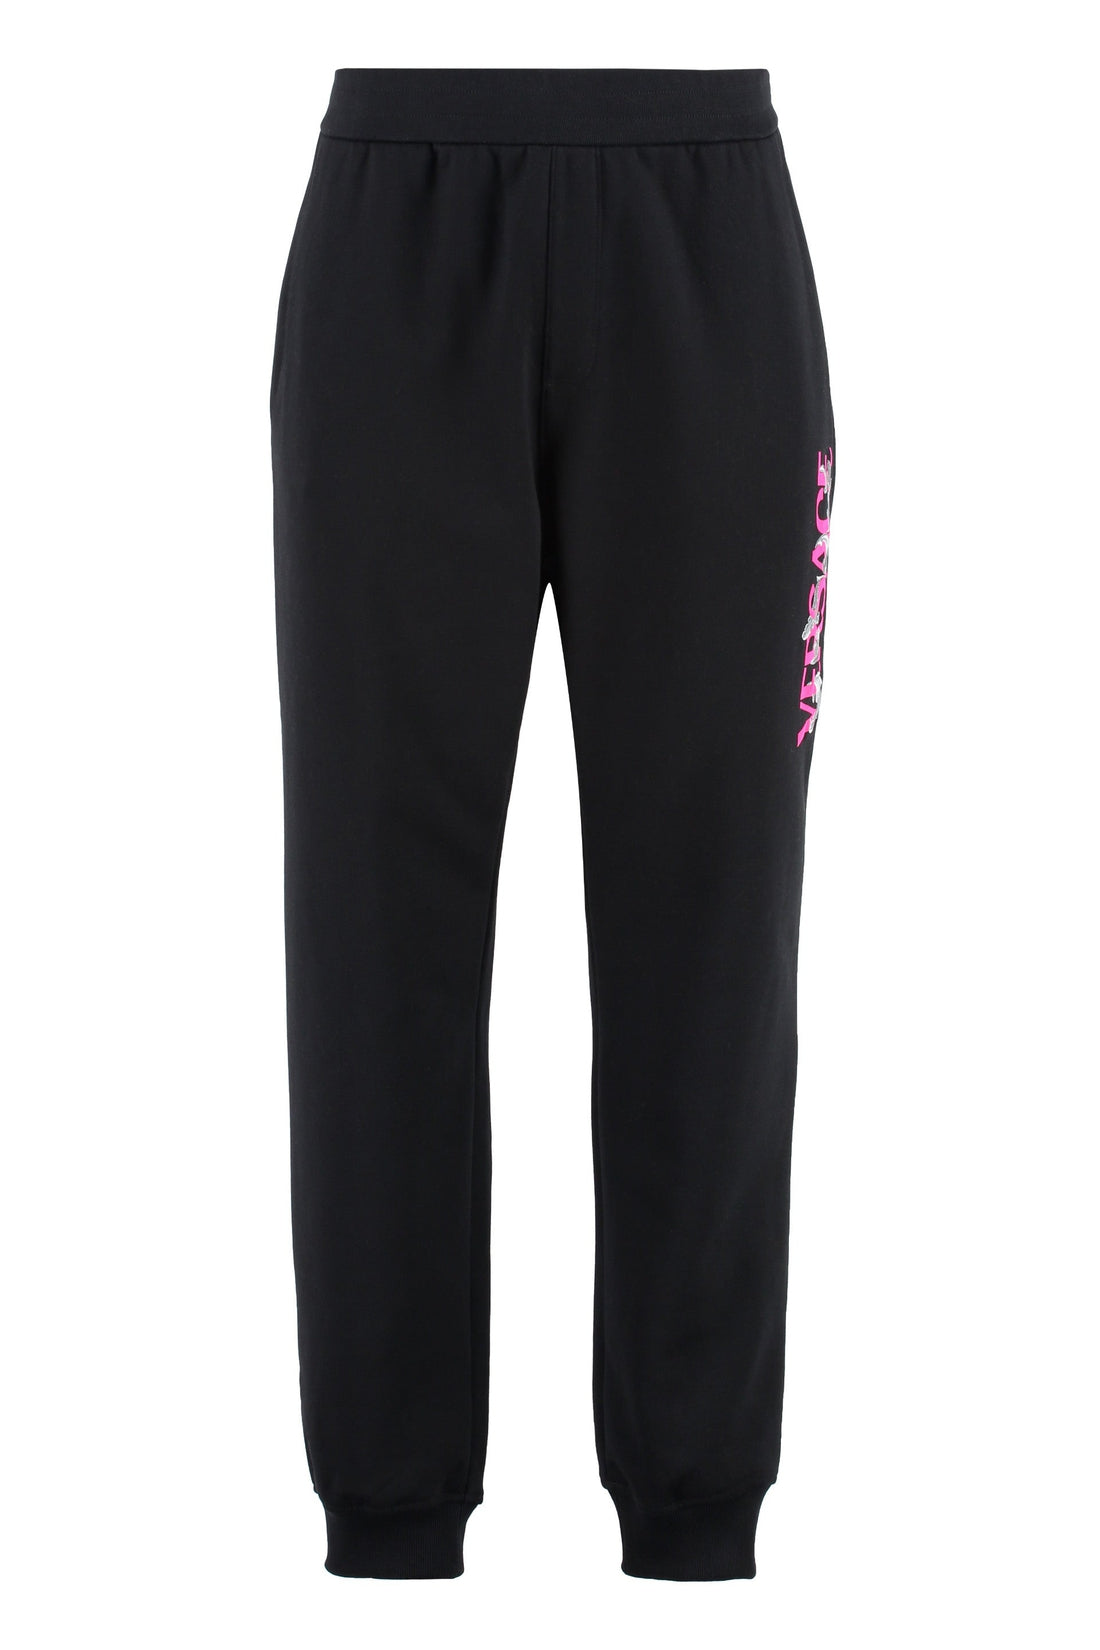 Versace-OUTLET-SALE-Logo print sweatpants-ARCHIVIST